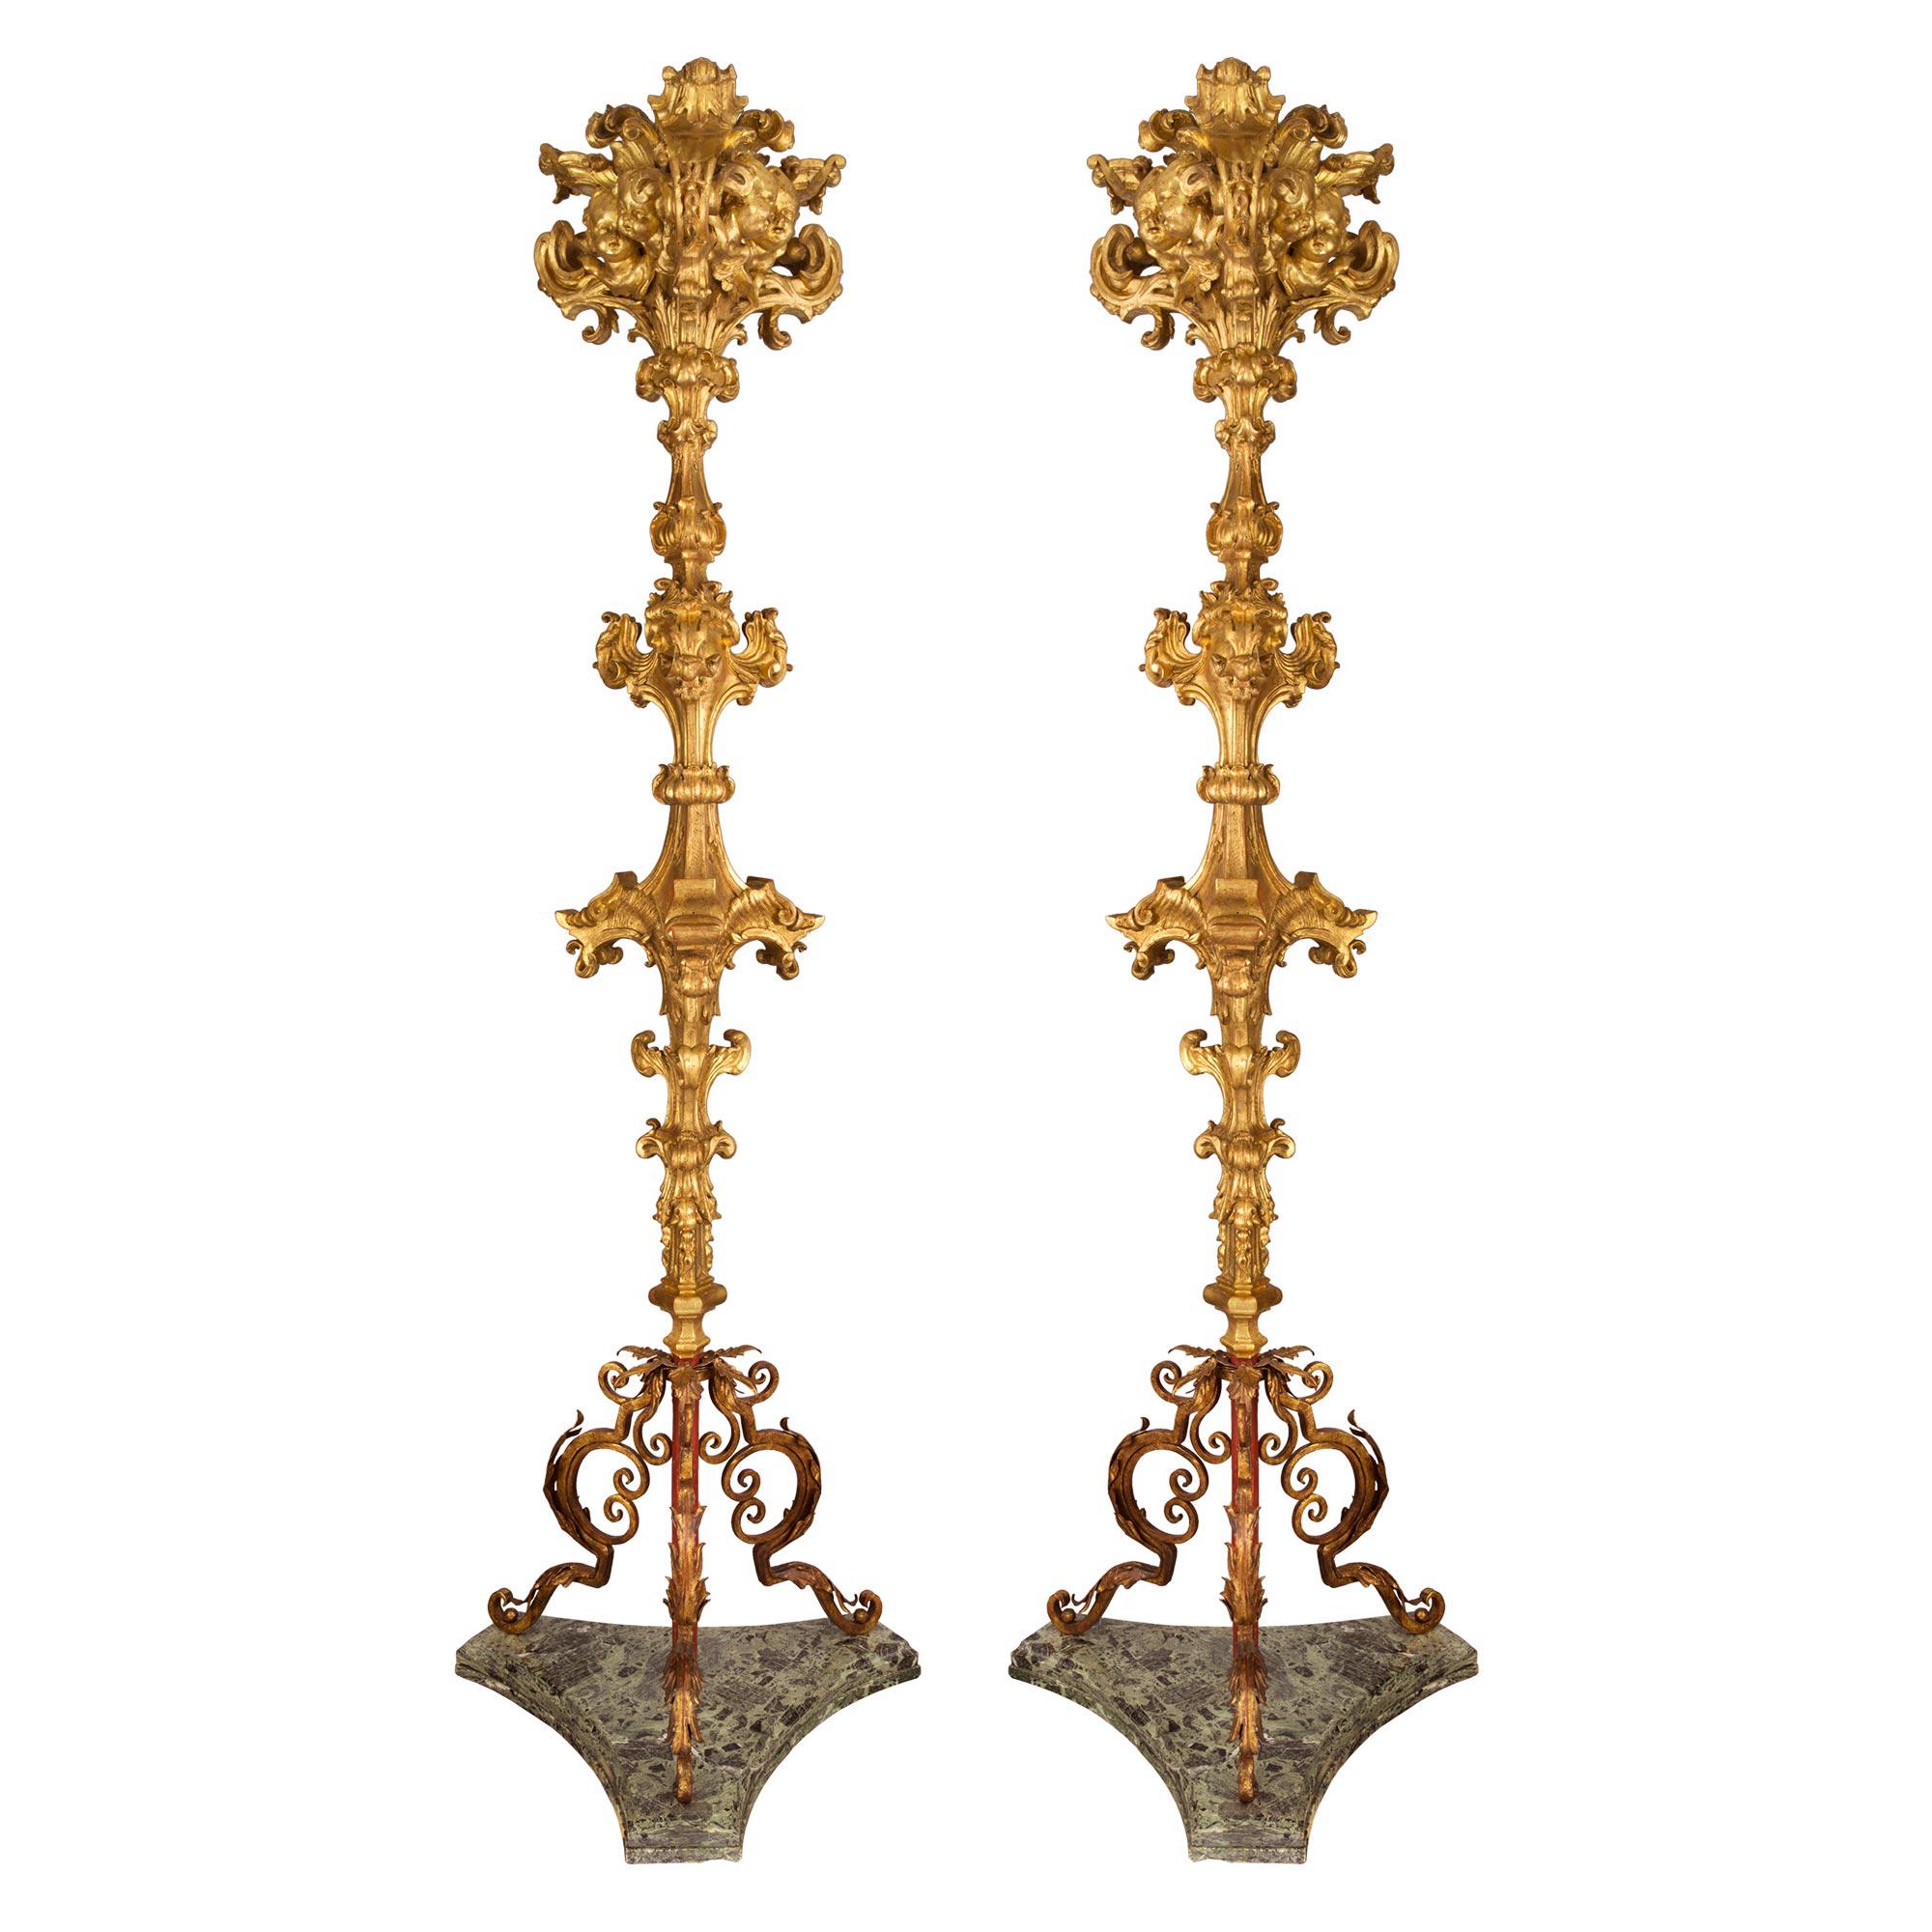 Paire de lampadaires italiens en bois doré d'époque baroque du 17ème siècle